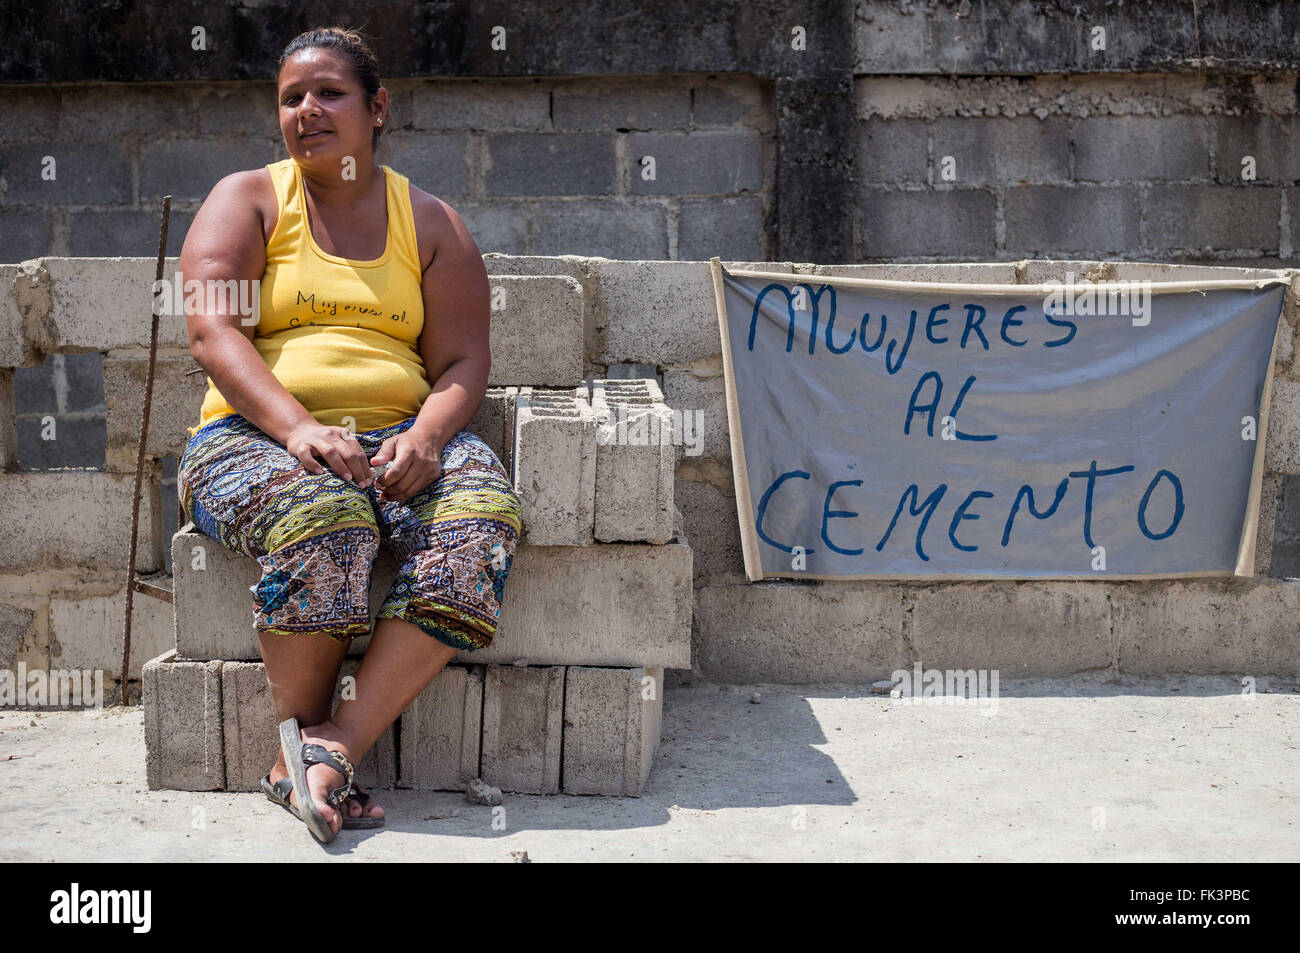 (160307) -- MIRANDA, le 7 mars 2016 (Xinhua) -- Image prise le 4 mars 2016 montre Kheinin Rengifo de 32 ans travaillant dans la coopérative "Les femmes sur le ciment' dans le quartier de Petare, capitale de la municipalité de Sucre, l'état de Miranda au Venezuela. La coopérative "Les femmes sur le ciment" a été lancé en 2010 par Coromoto Rengifo, un éducateur à la retraite, et ses deux filles, et Kheilin Kheinin. Ce groupe de huit femmes produit jusqu'à 150 blocs de ciment par jour. La Journée internationale de la femme est célébrée chaque année le 8 mars. Le thème pour 2016 est "Planète d'ici 2030 50-50 : Step It Up pour Gen Banque D'Images